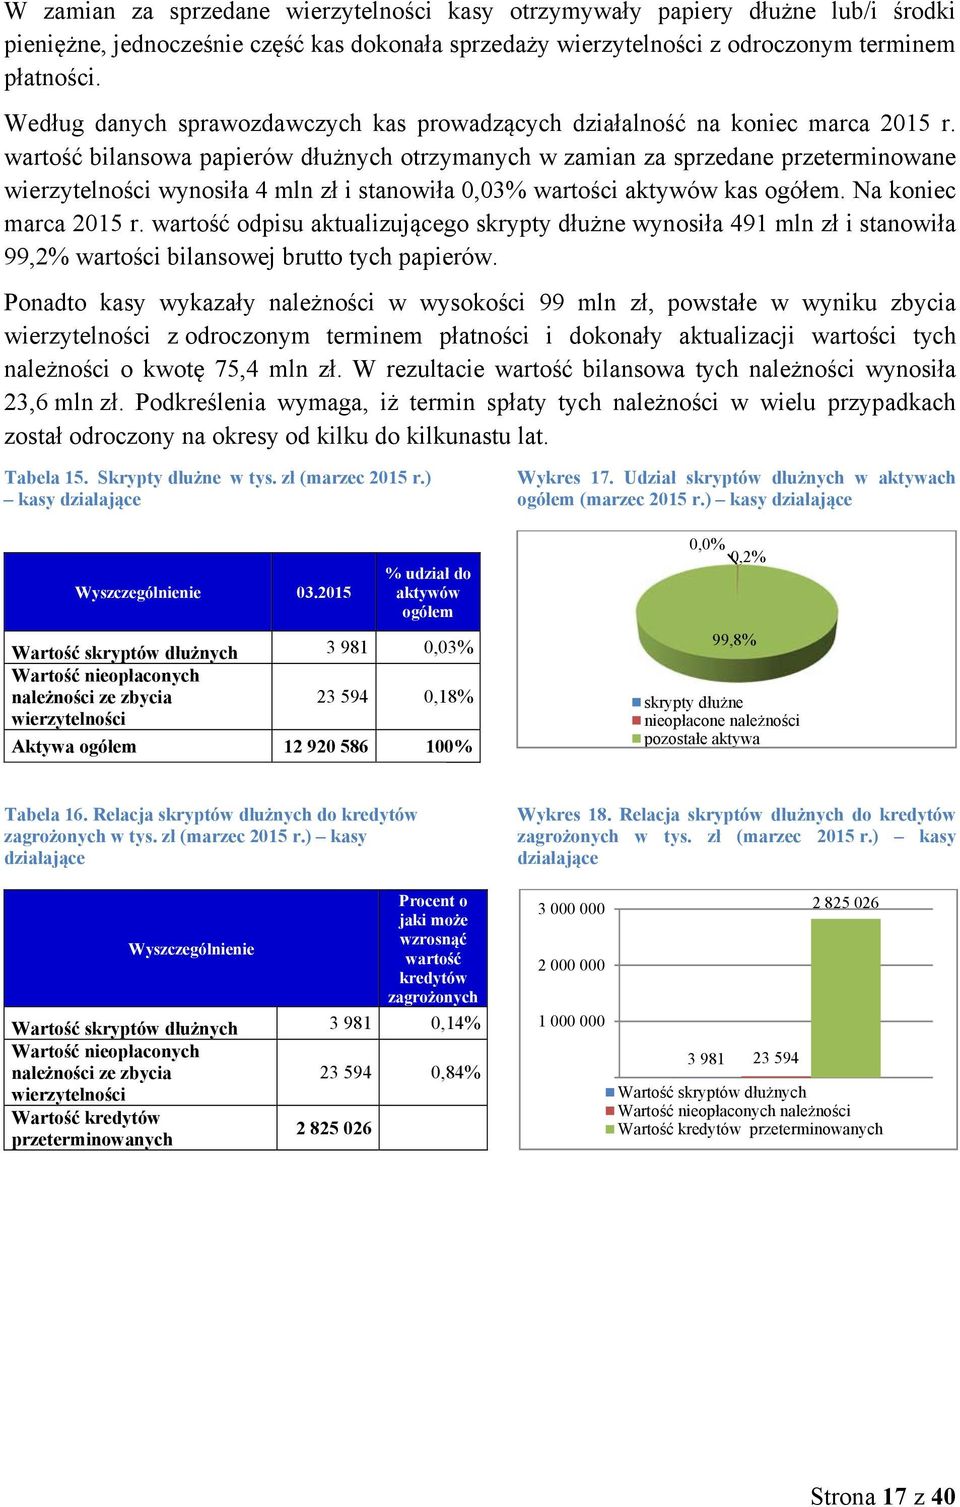 wartość bilansowa papierów dłużnych otrzymanych w zamian za sprzedane przeterminowane wierzytelności wynosiła 4 mln zł i stanowiła 0,03% wartości aktywów kas ogółem. Na koniec marca 2015 r.